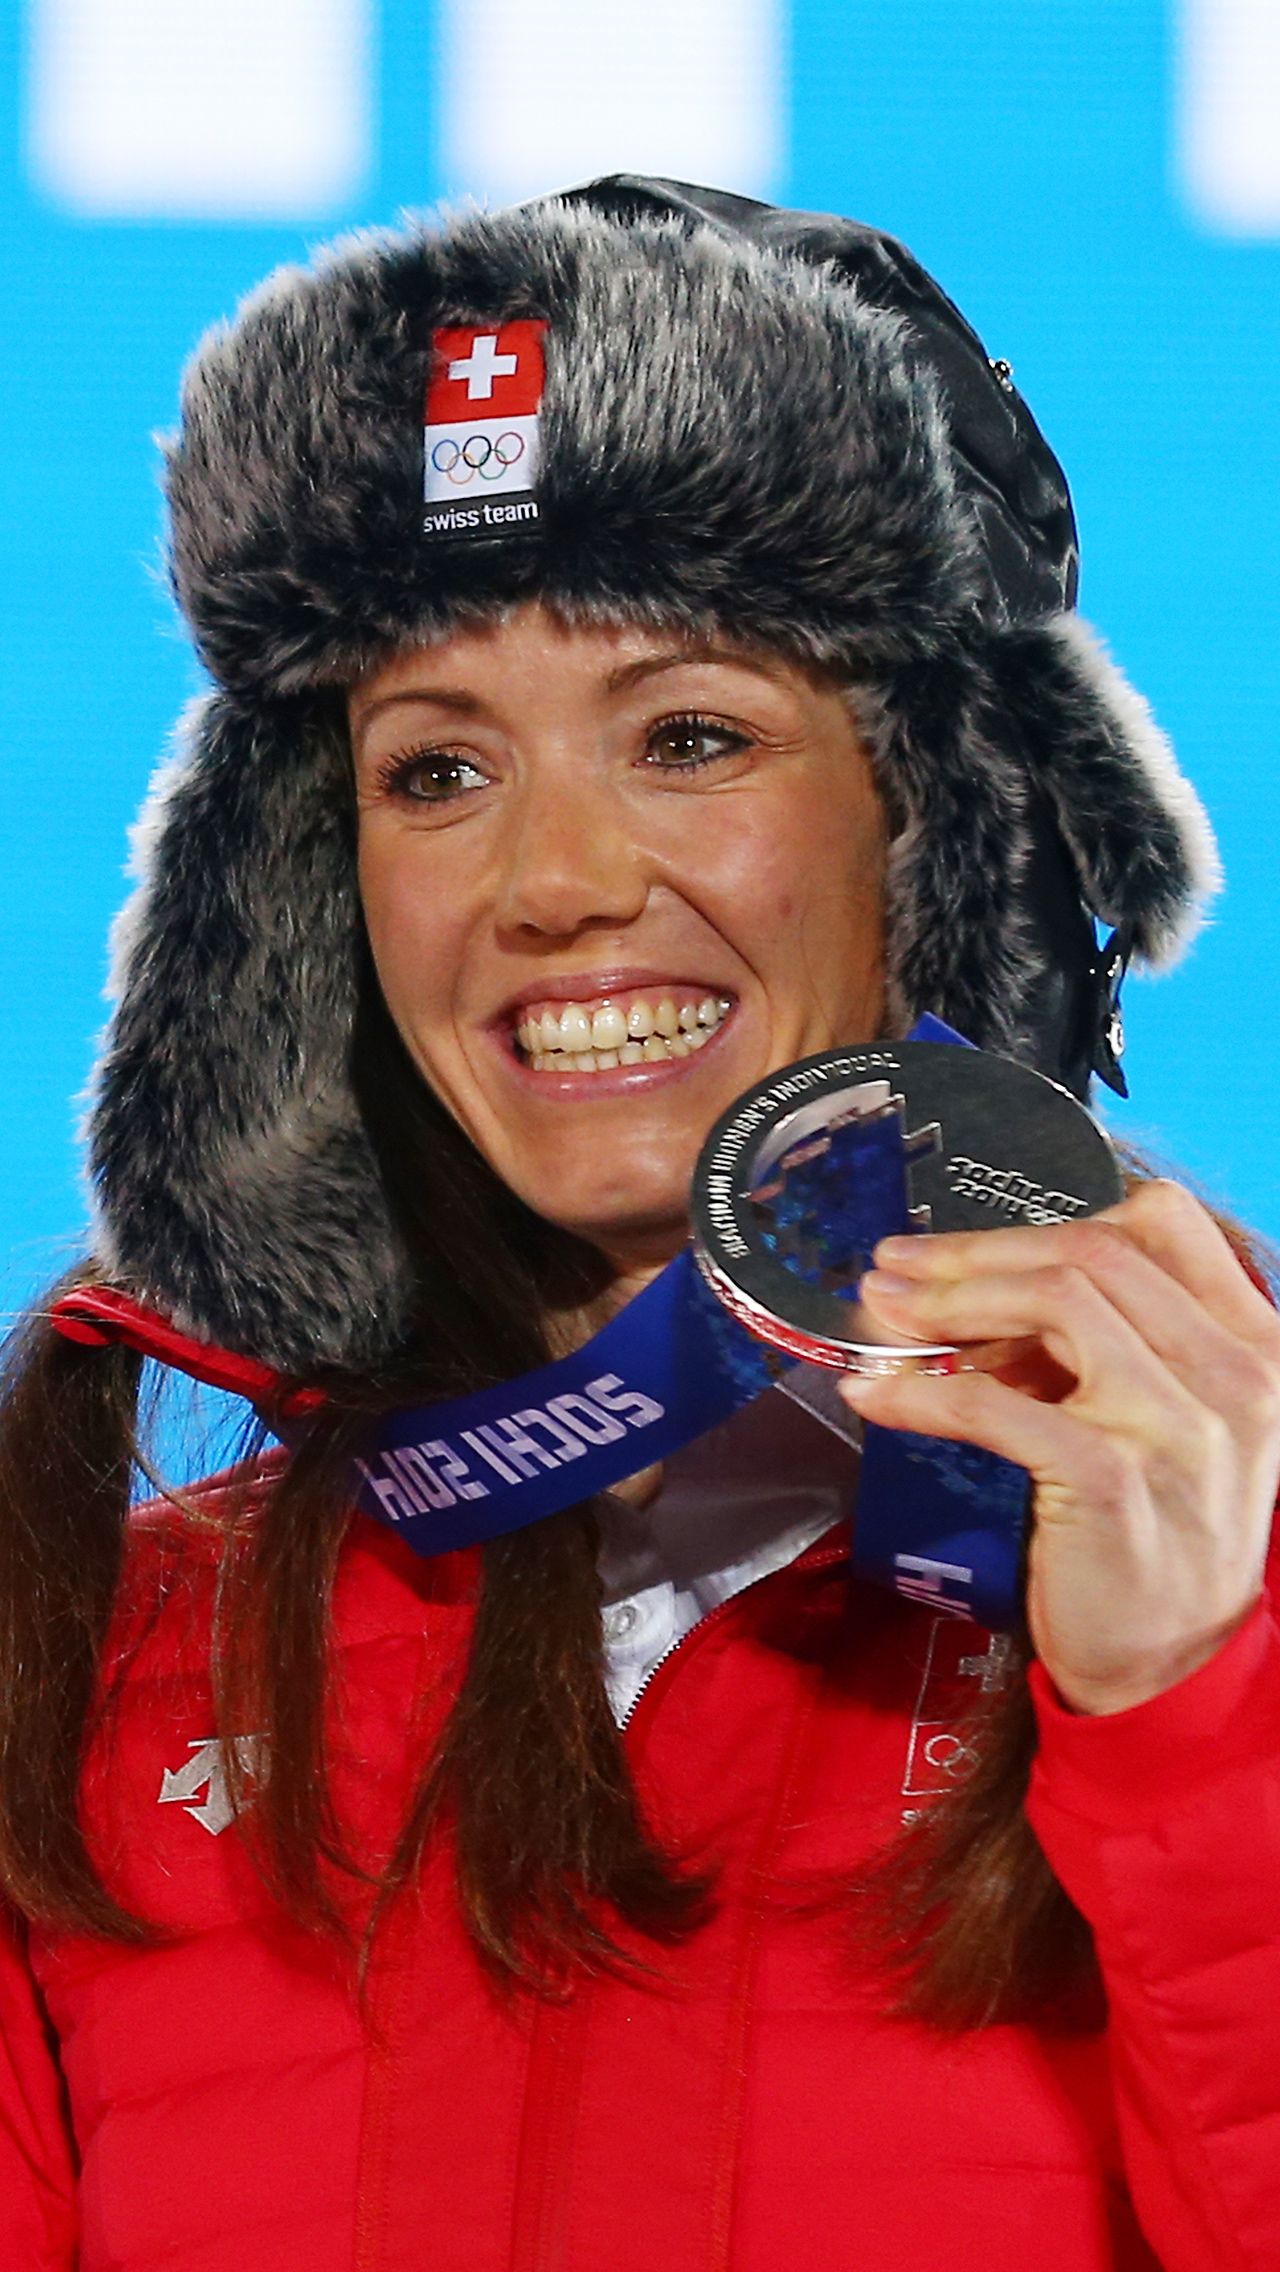 Селина Гаспарин дебютировала на КМ в 2005-м. 37-летняя биатлонистка – автор первого в истории Швейцарии олимпийского серебра в биатлоне. Всего на счету Гаспарин четыре личных подиума на Кубке мира. 